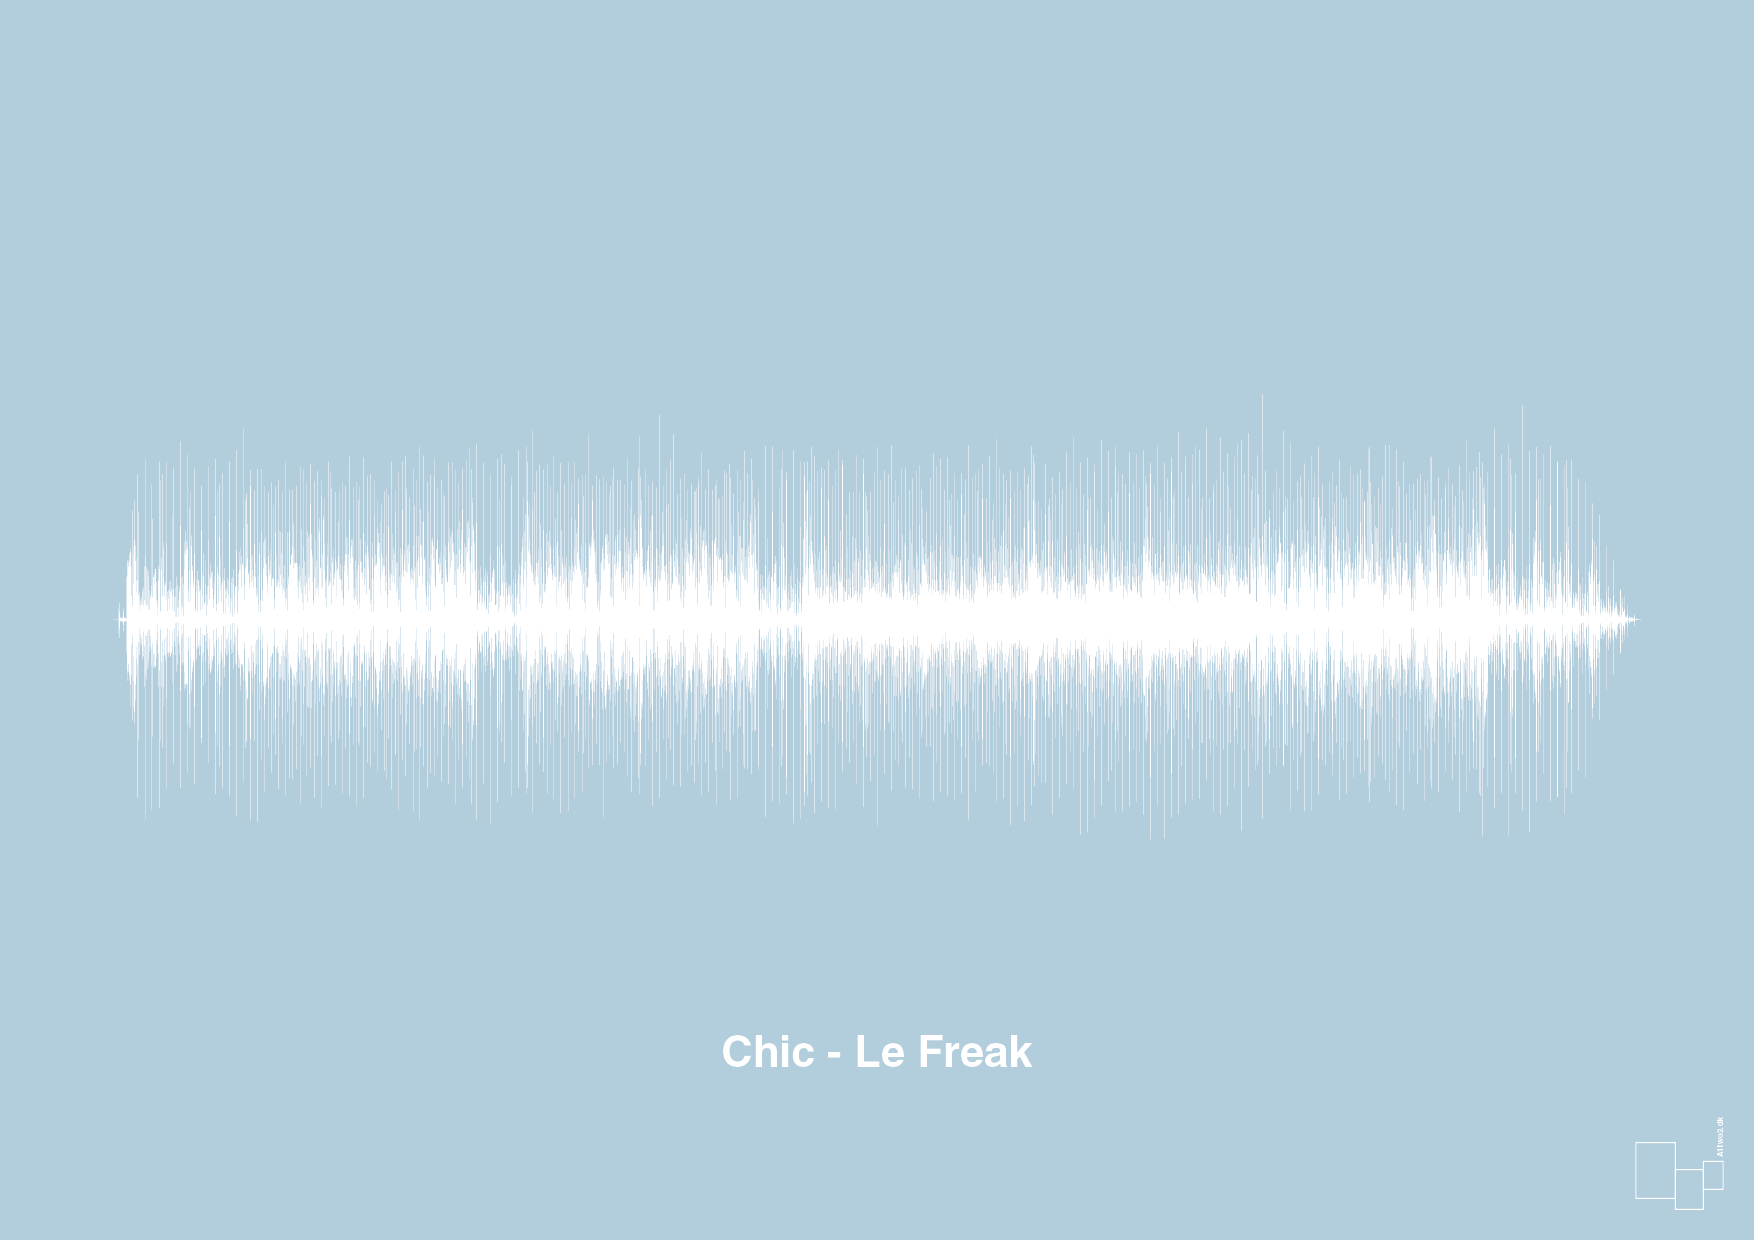 chic - le freak - Plakat med Musik i Heavenly Blue